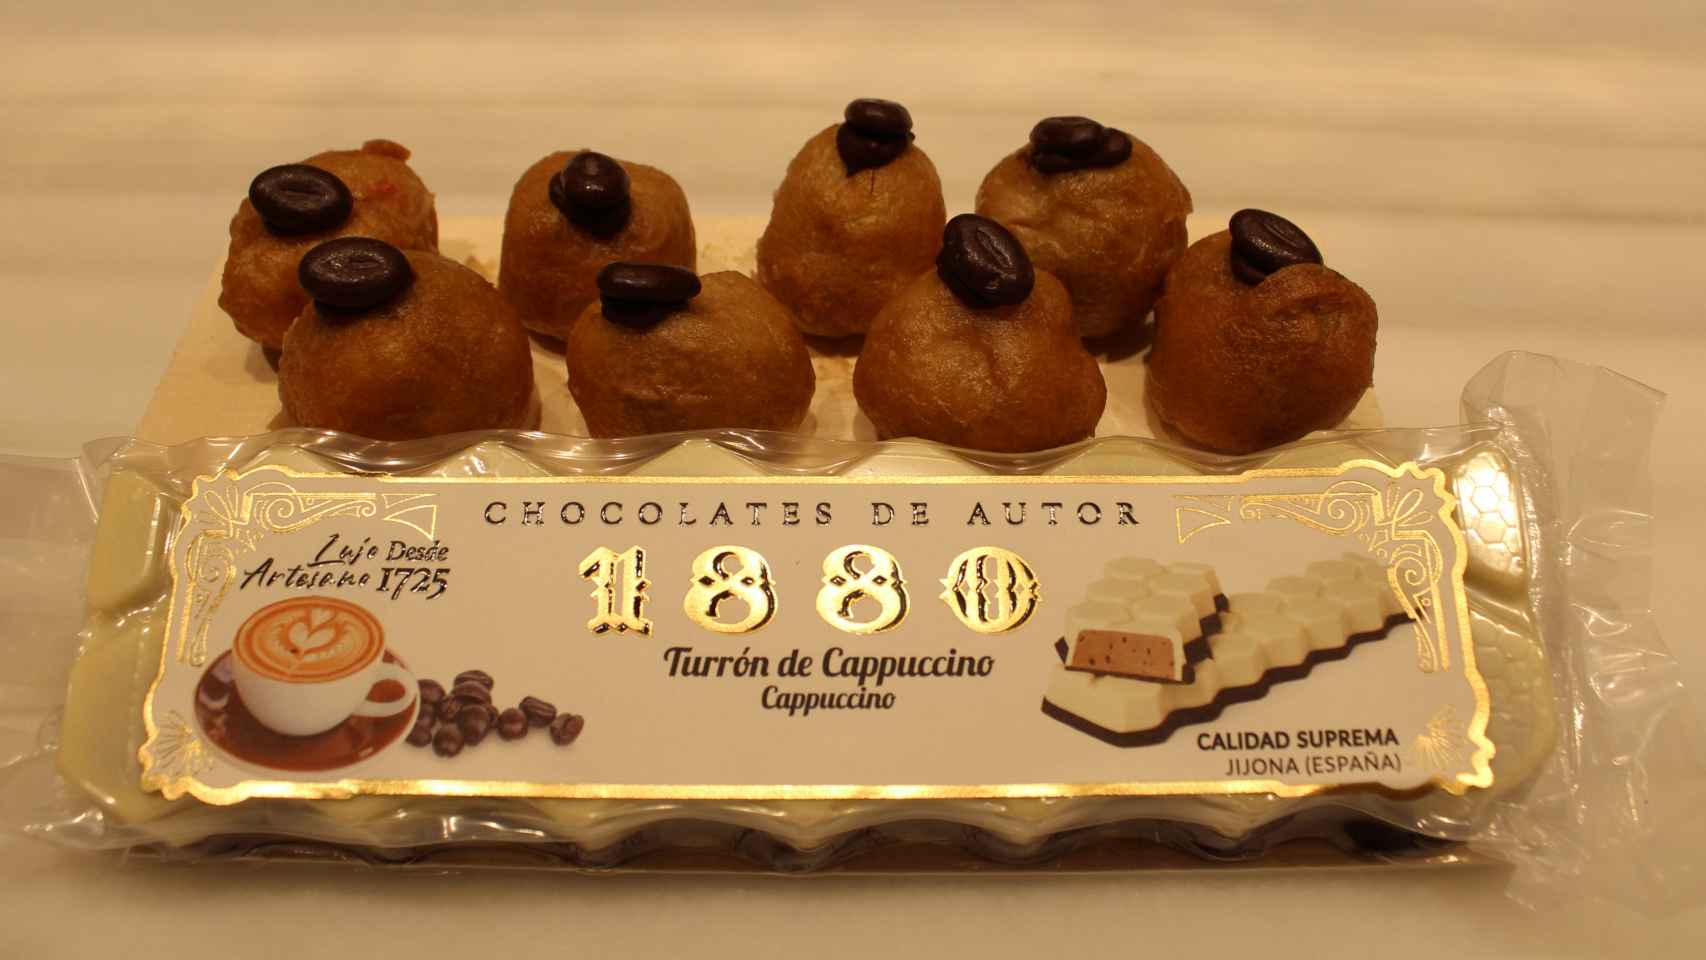 El turrón de Capuccino, acompañado de los buñuelos basados en el dulce de 1880.